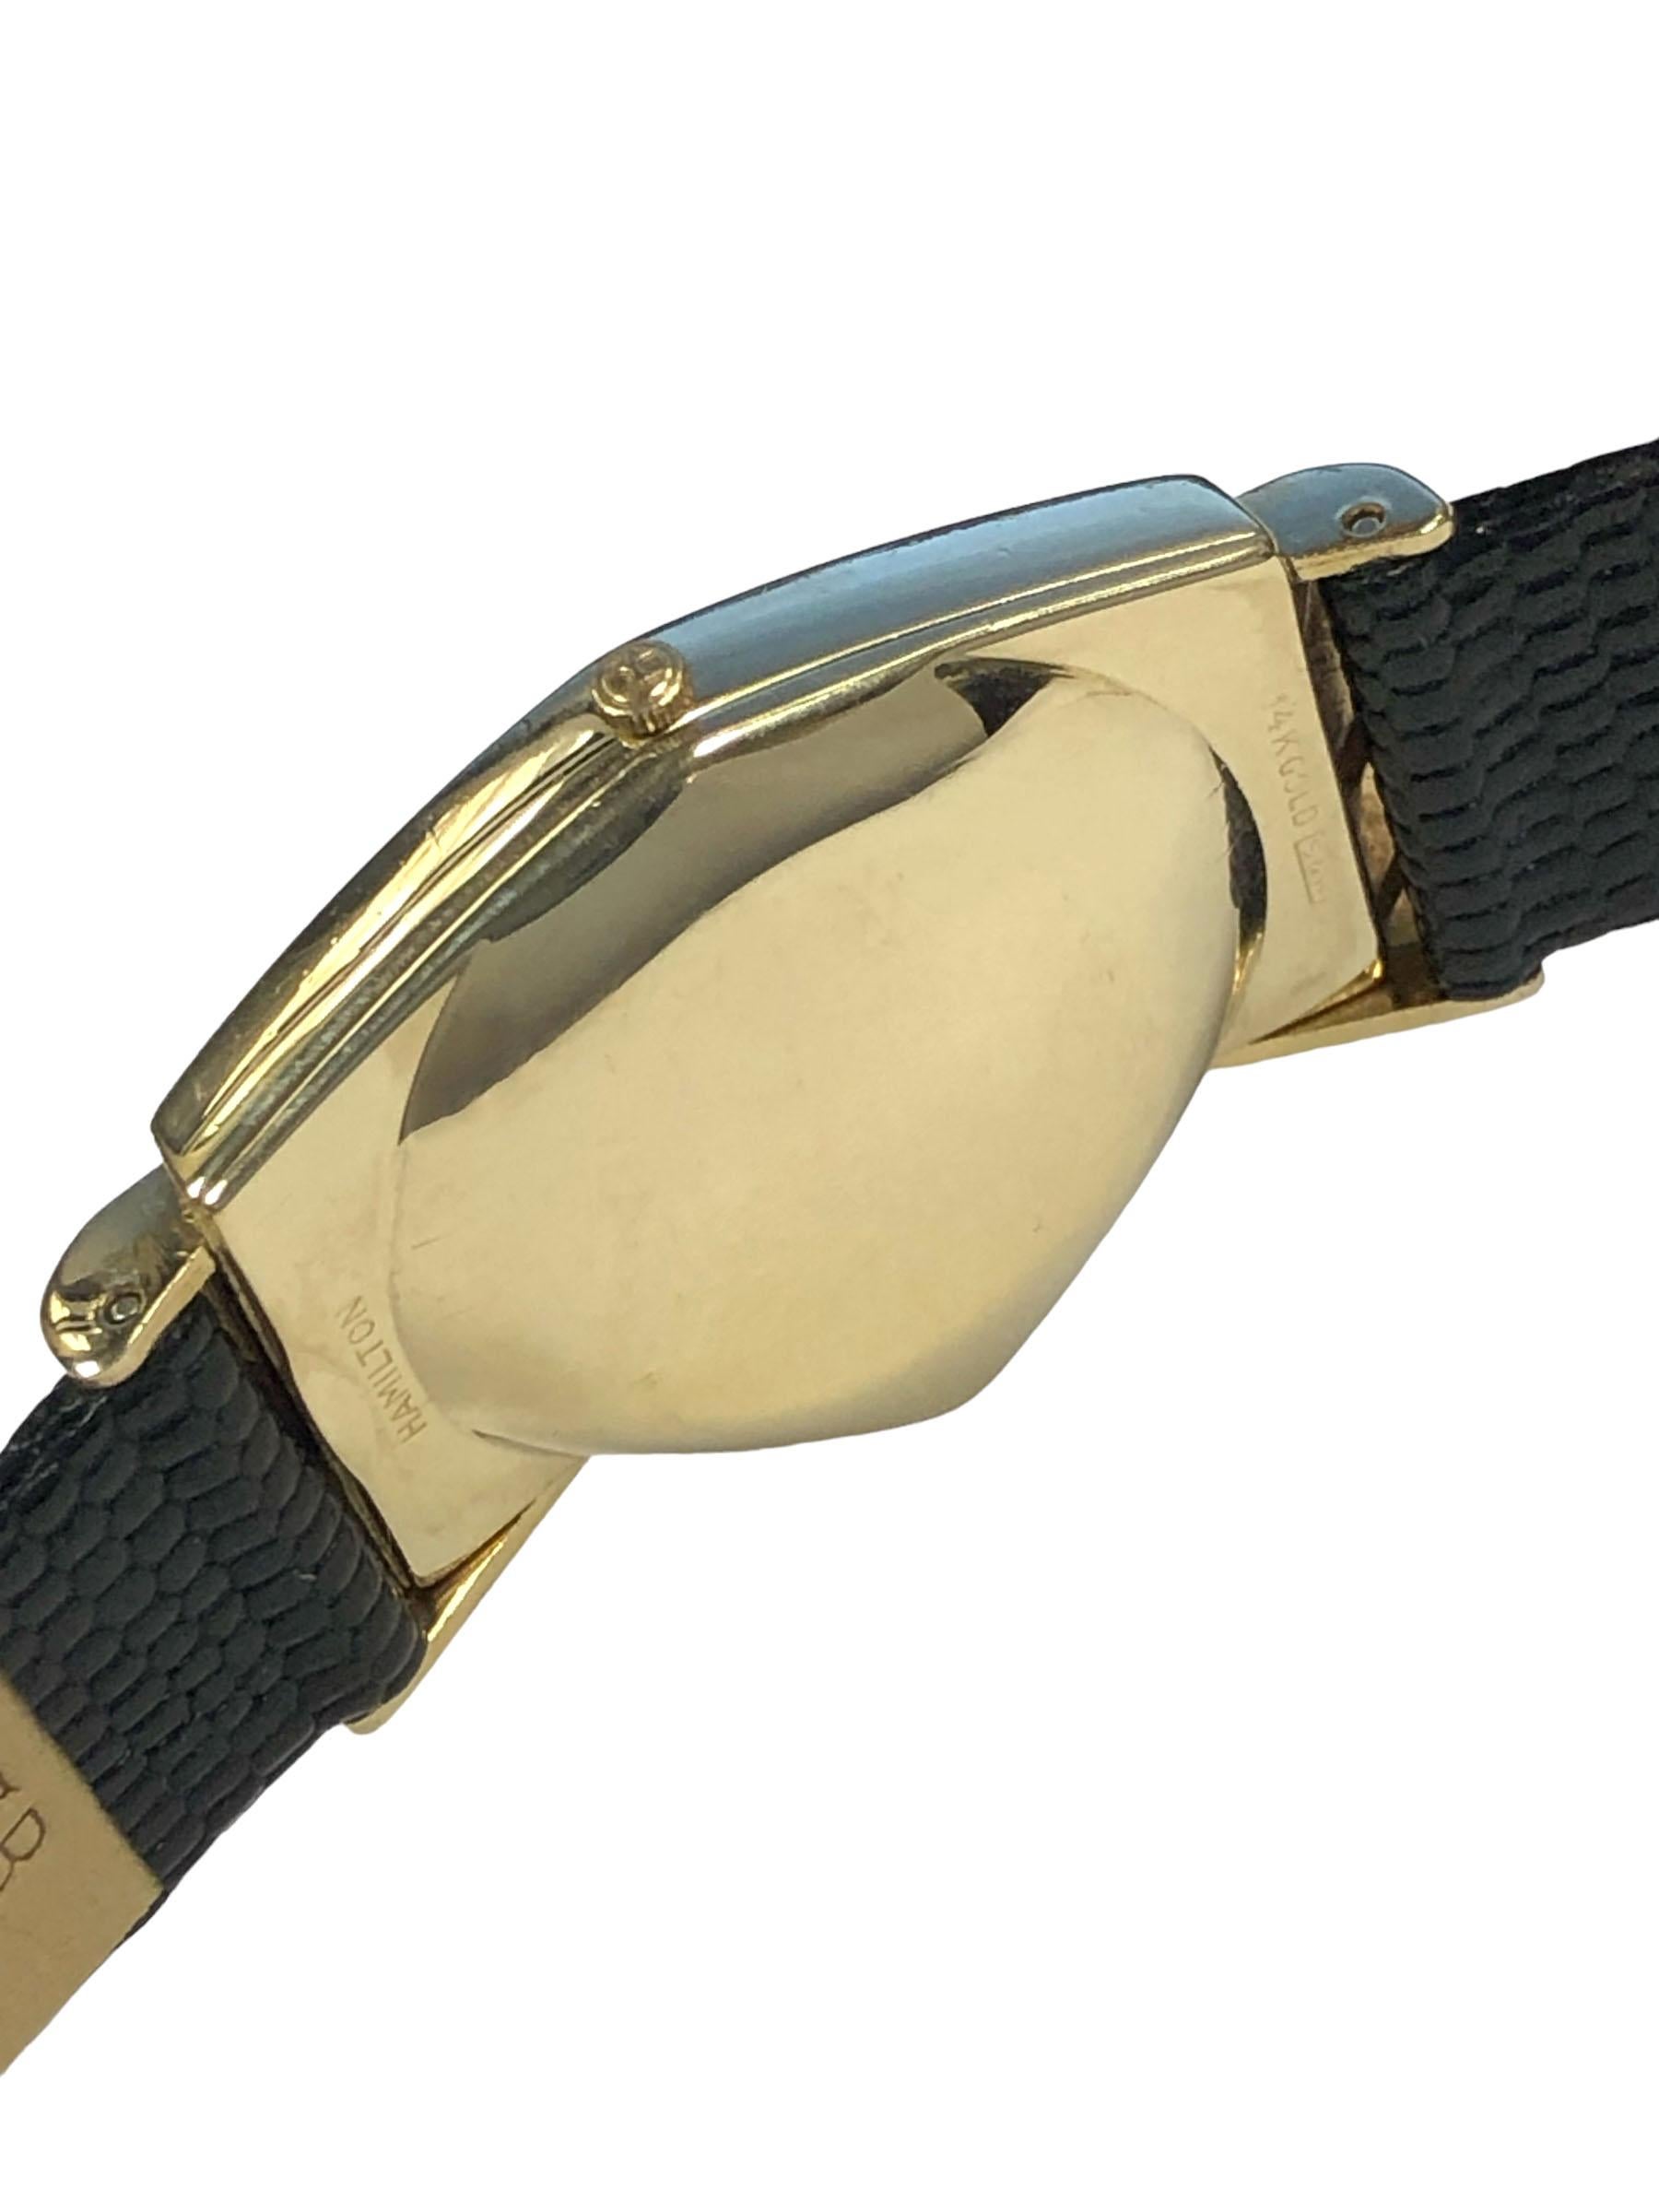 Circa 1960 Montre-bracelet Hamilton Electric Ventura, boîtier 2 pièces en or jaune 14k, mouvement électronique Hamilton 505, cadran noir avec index en relief en or et aiguille des secondes à balayage. Nouveau bracelet en grain de lézard noir, livré